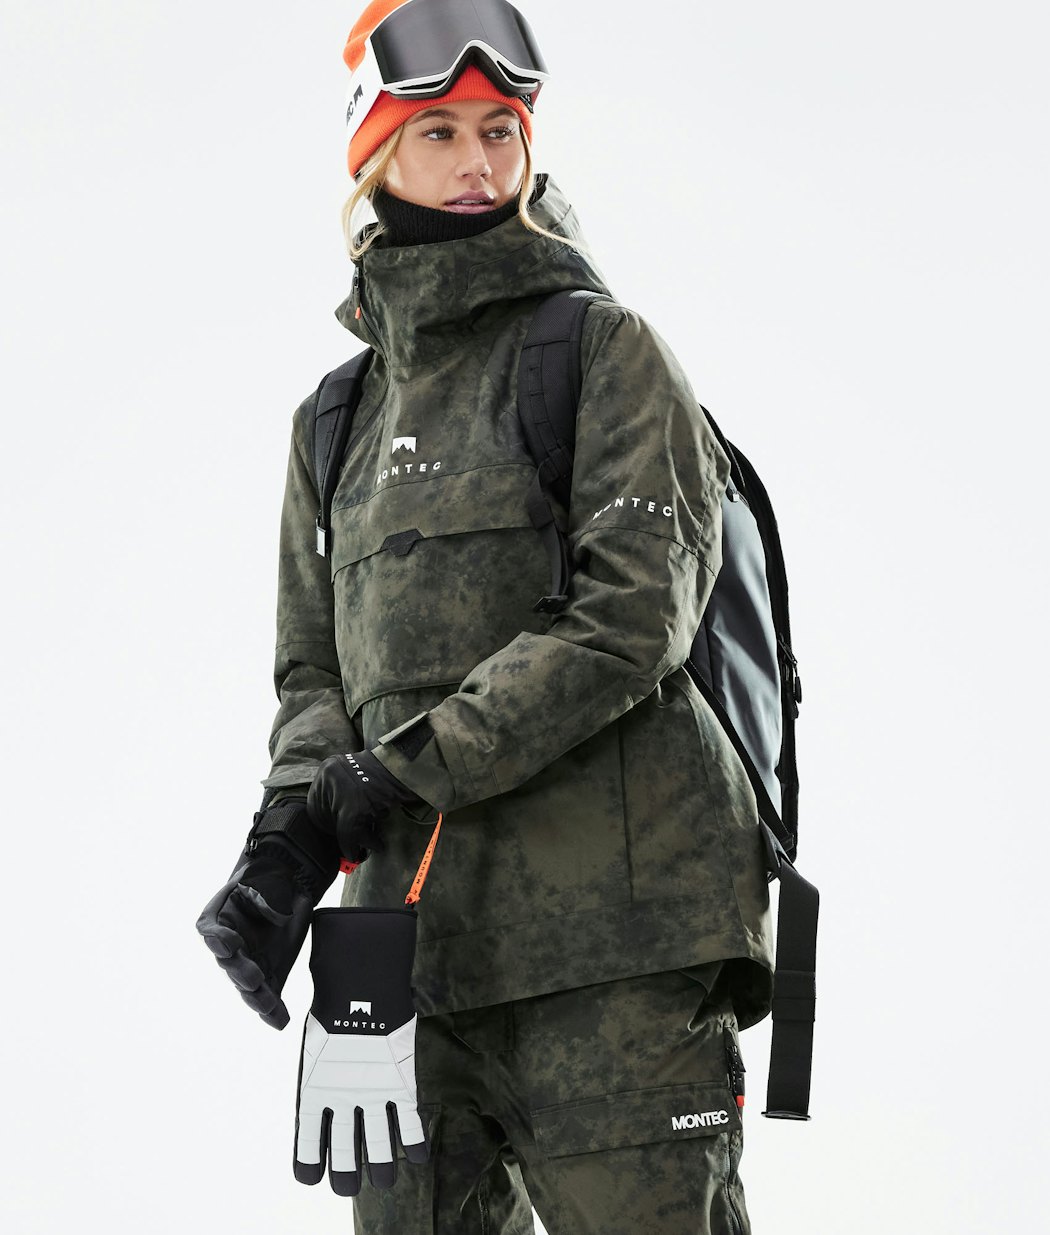 Dune W 2021 Snowboard Jacket Women Olive Green Tiedye Renewed